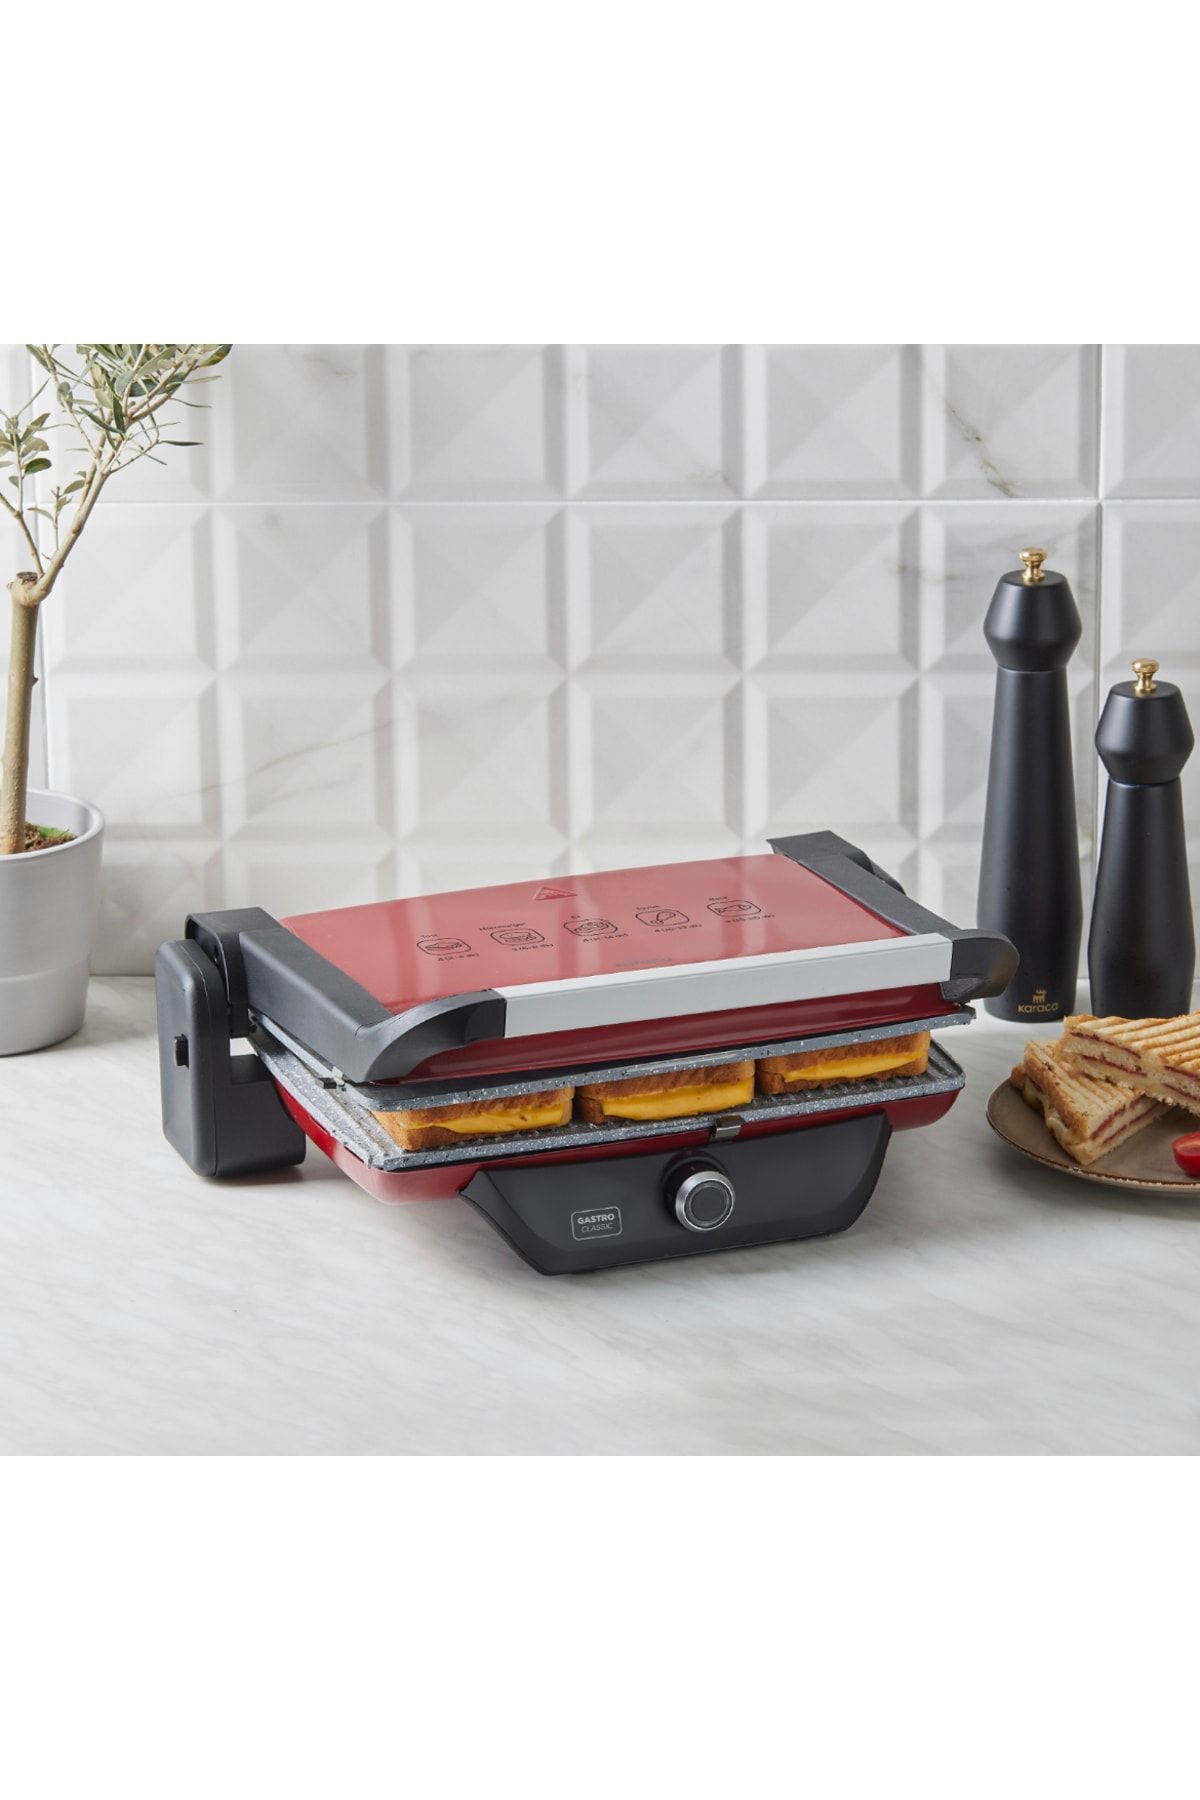 Karaca Gastro Izgara ve Tost Makinesi 4 Kademeli Çıkarılabilir Plaka Premium Kırmızı